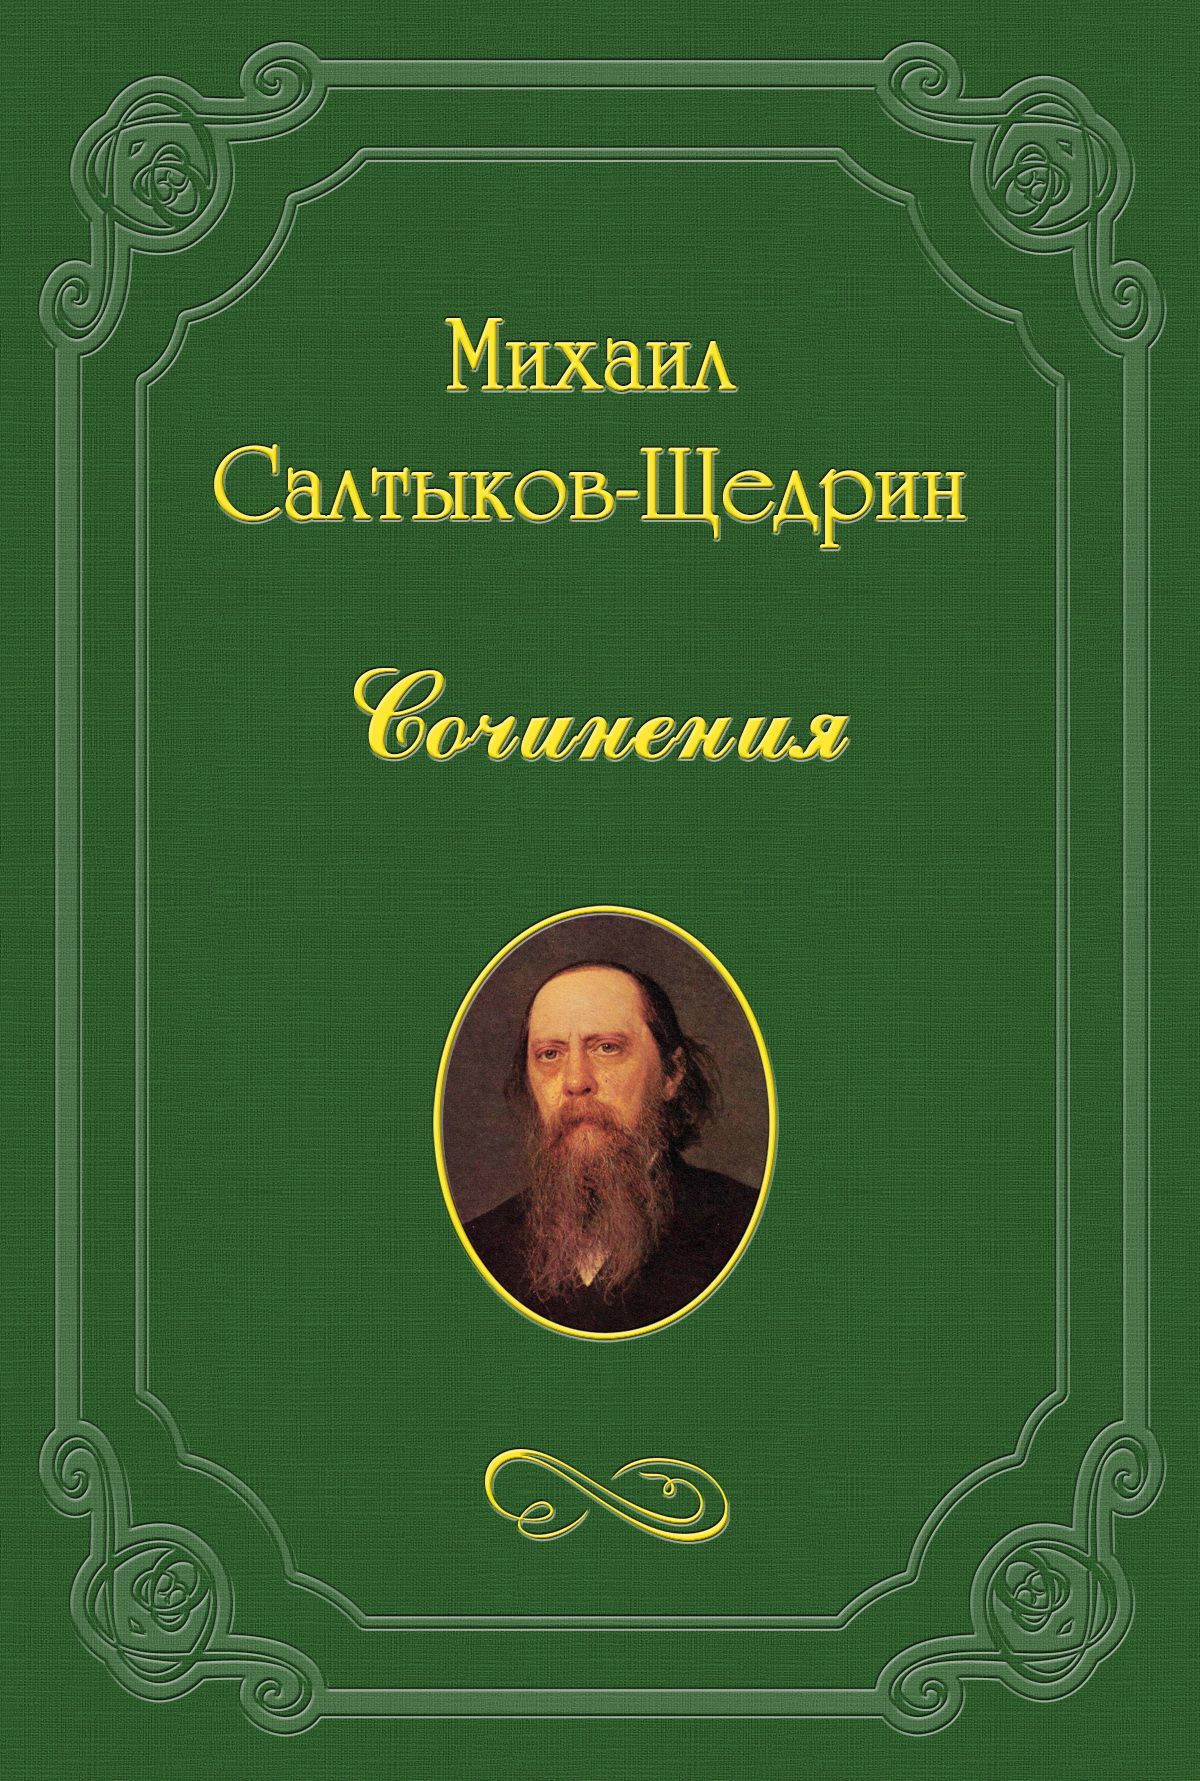 Книга Первоначальный учитель из серии , созданная Михаил Салтыков-Щедрин, может относится к жанру Критика. Стоимость книги Первоначальный учитель  с идентификатором 3133275 составляет 5.99 руб.